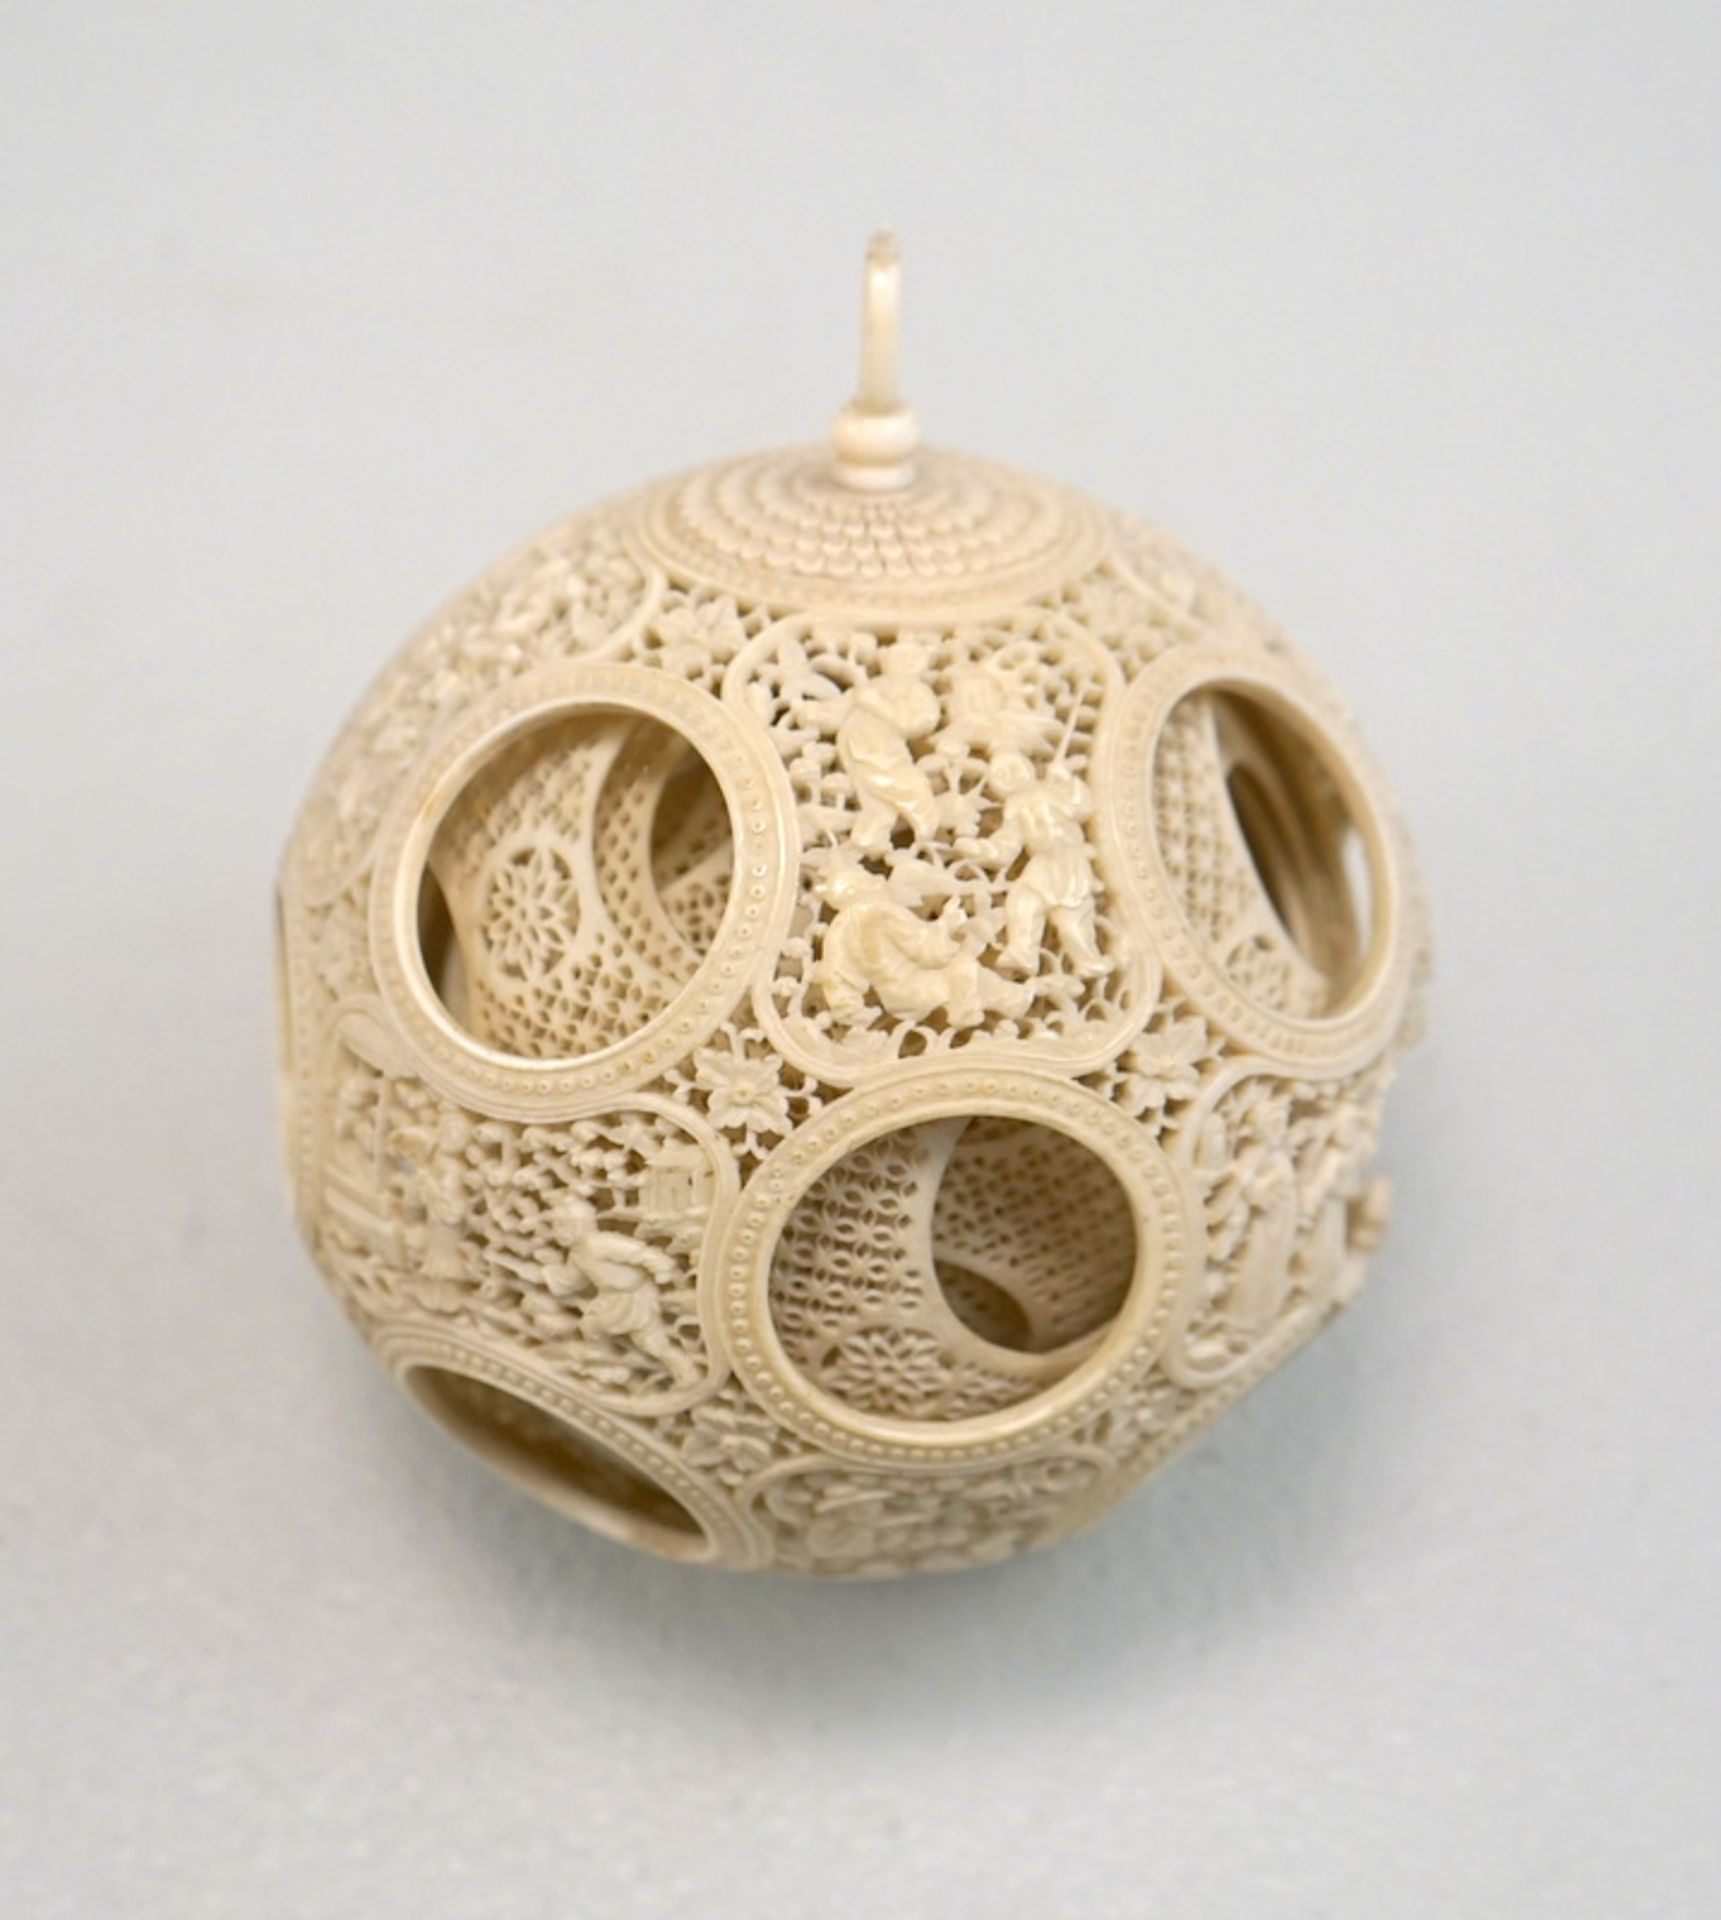 Große Elfenbein Wunderkugel Kunstkammerobjekt, China 18./19. Jhd.,auch "Chinesischer Ball" feinste